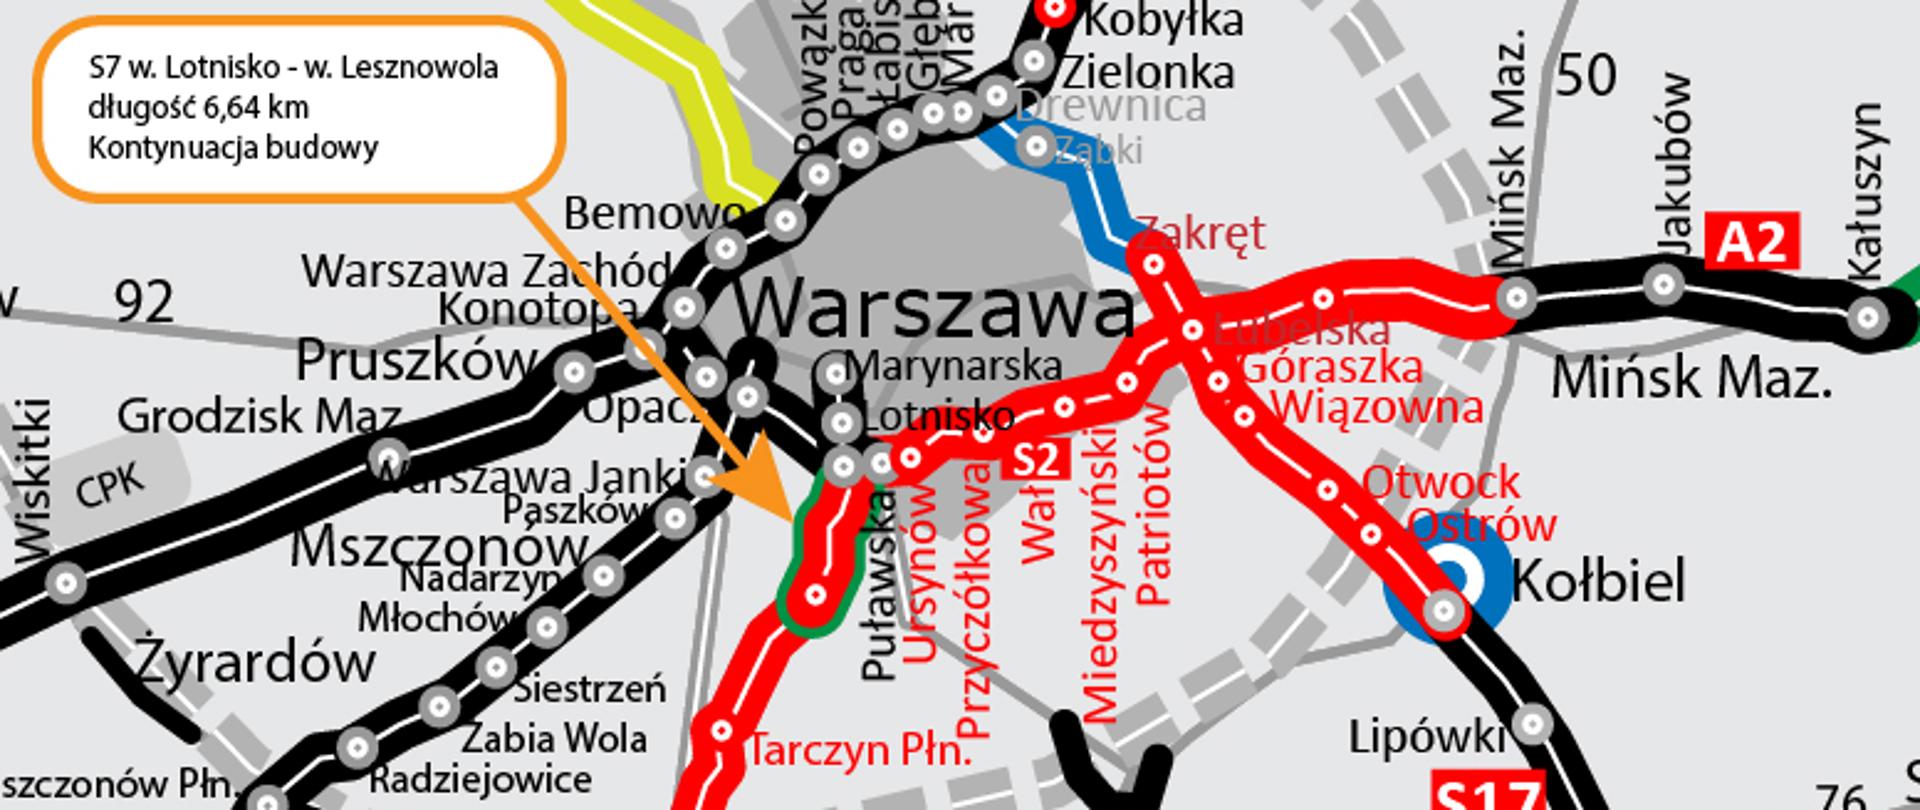 Mapa S7 odcinek Lotnisko - Lesznowola